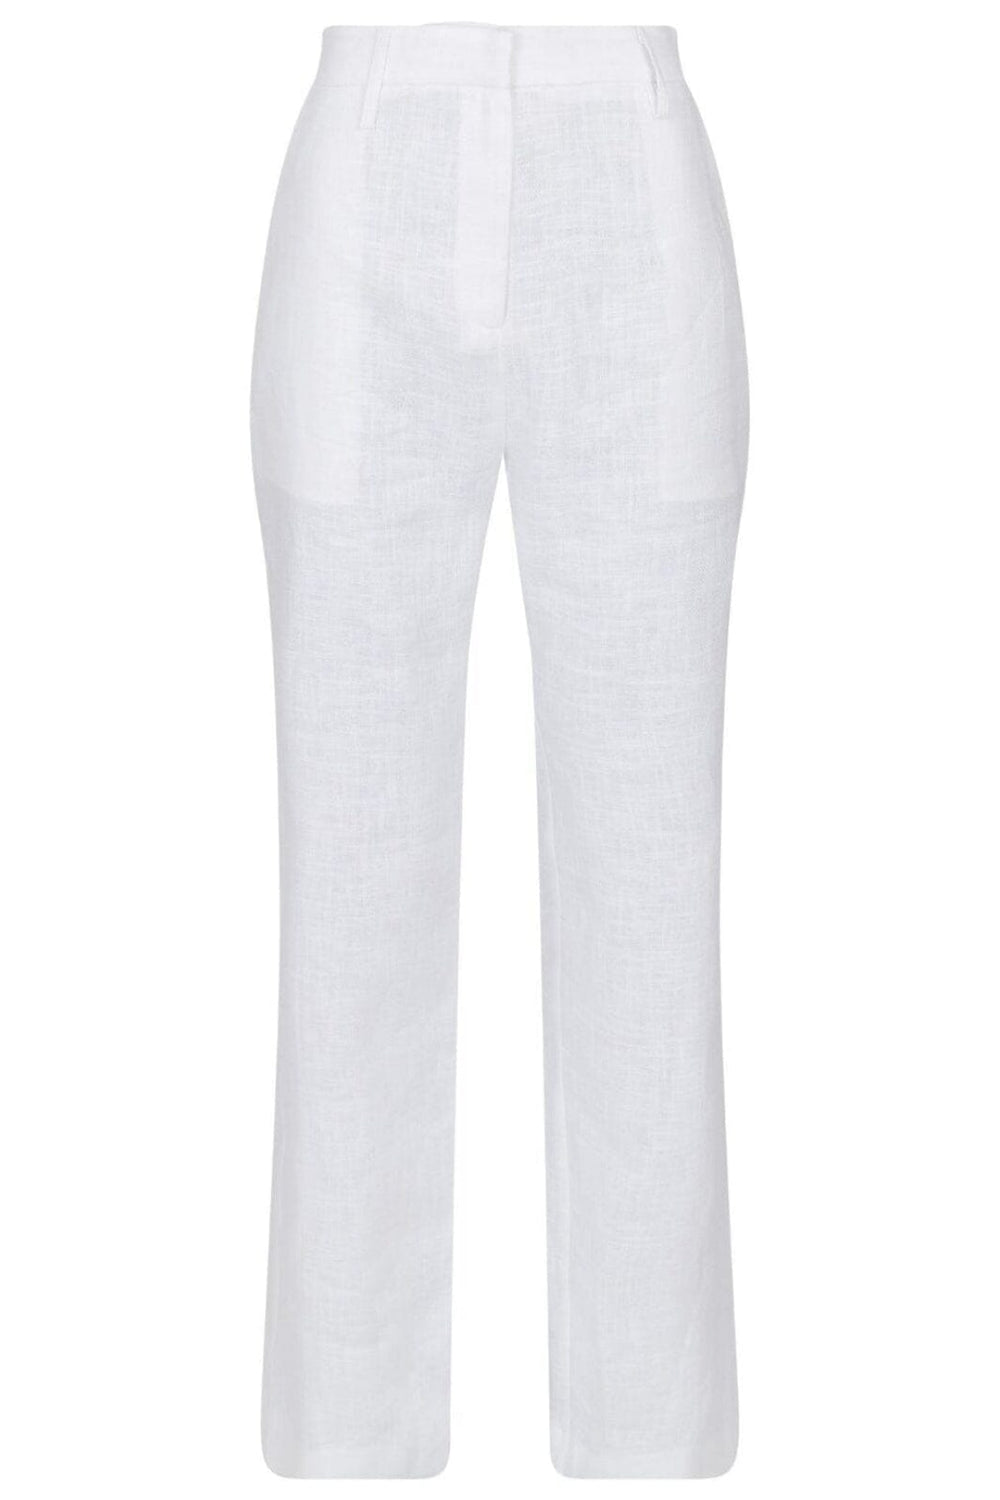 Neo Noir - Alice Heavy Linen Pants - White Bukser 